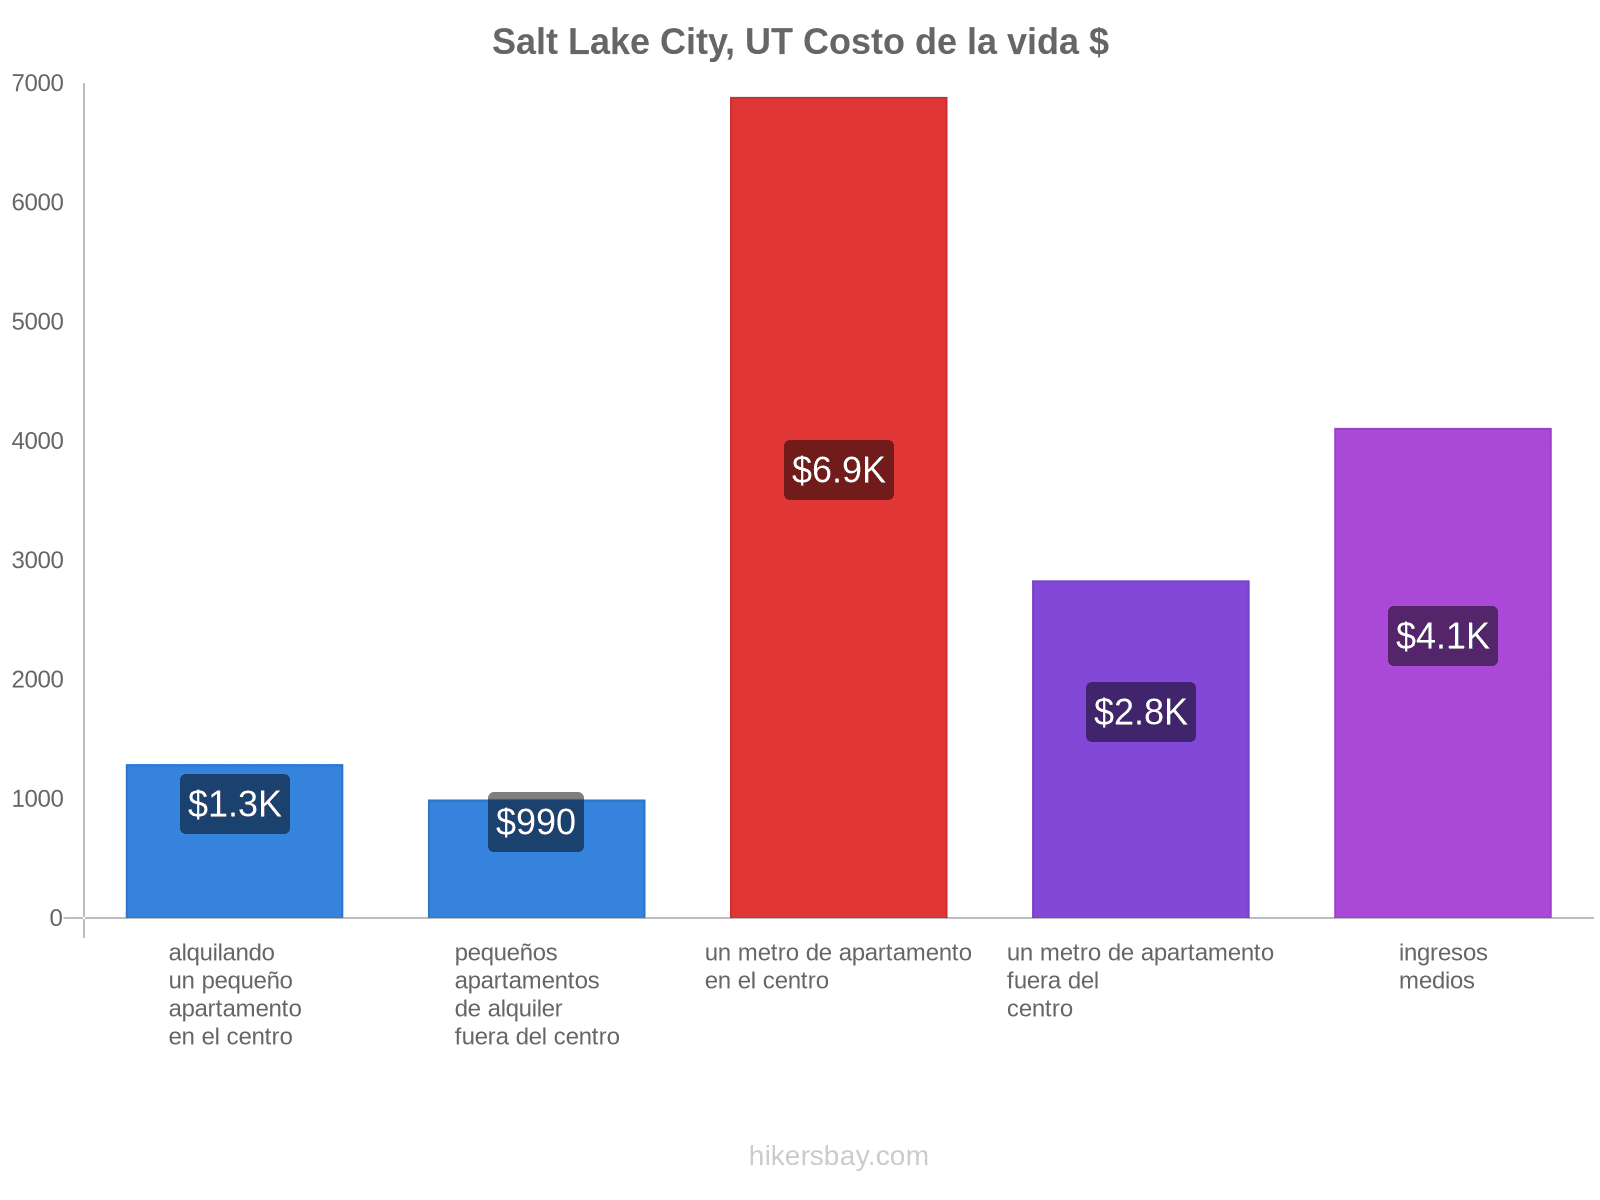 Salt Lake City, UT costo de la vida hikersbay.com